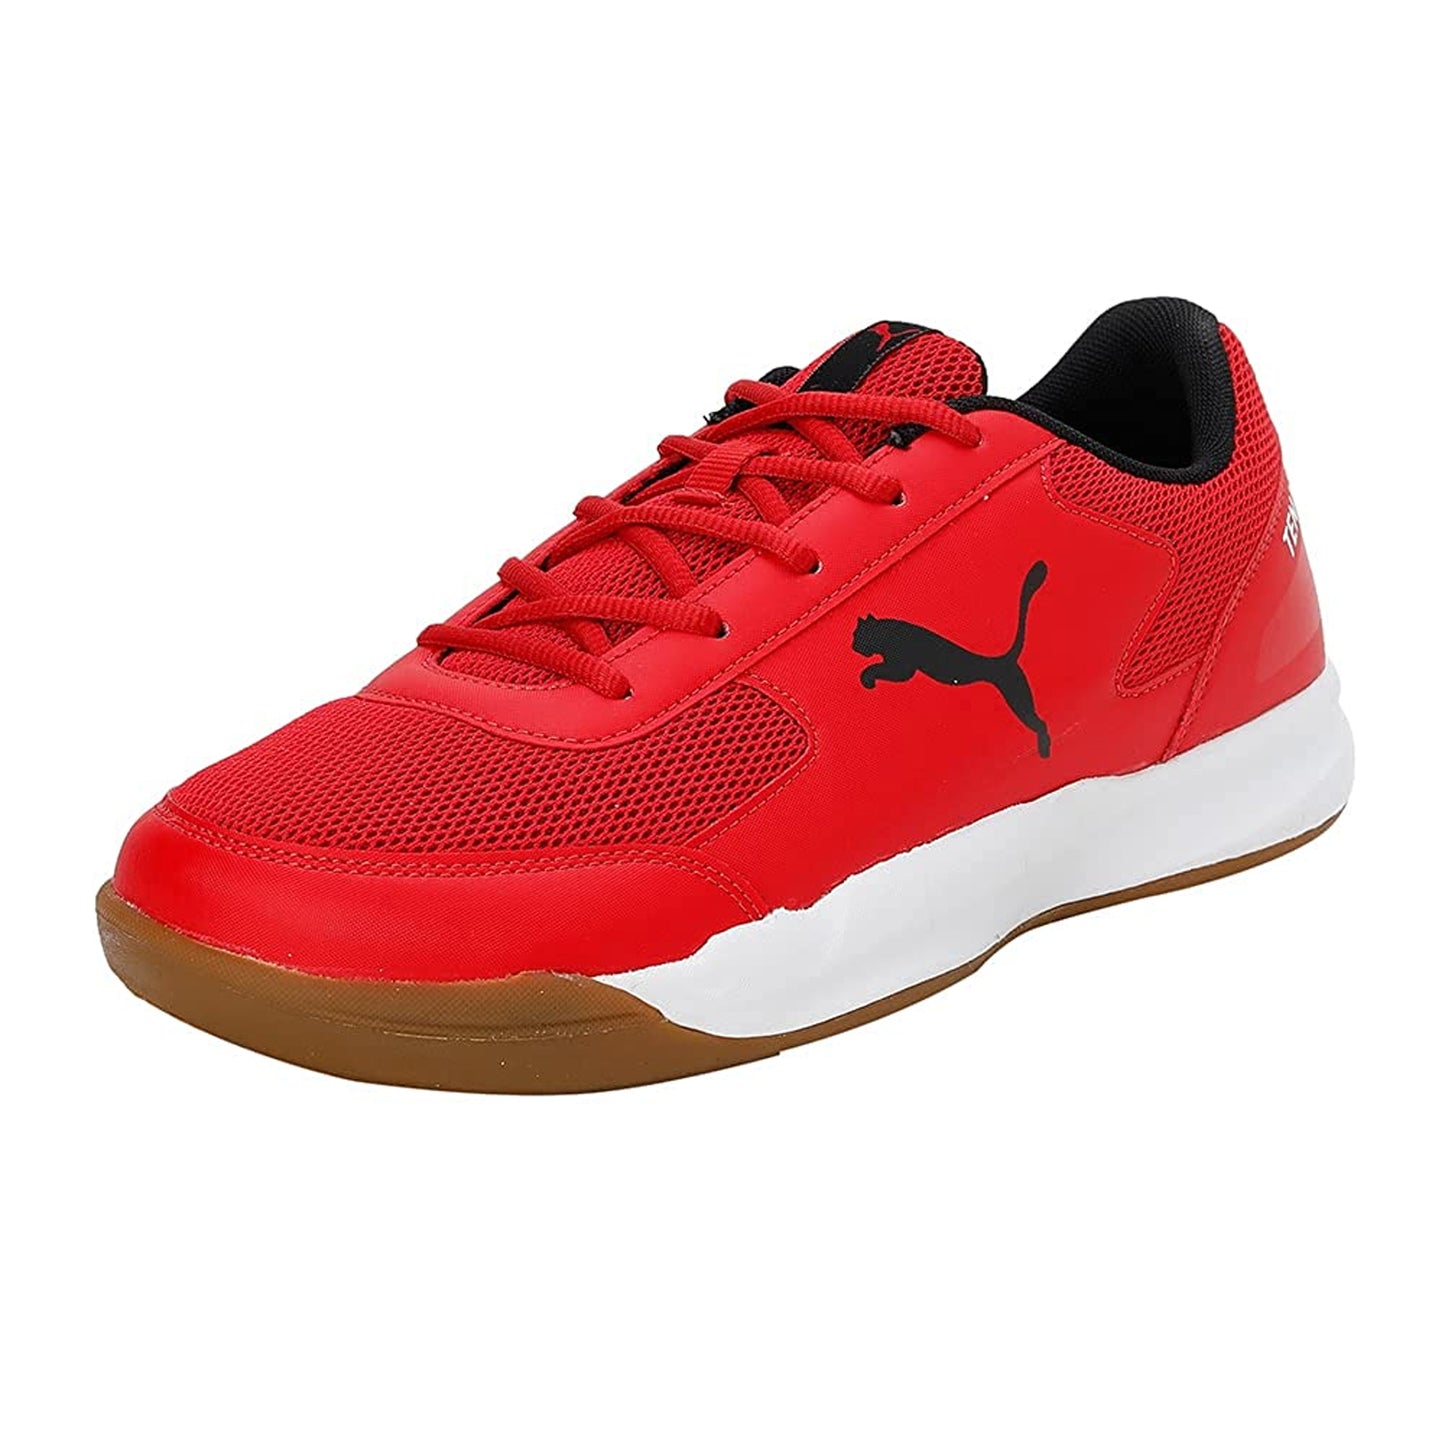 Puma Ad-court Men's Badminton Shoes - Best Price online Prokicksports.com